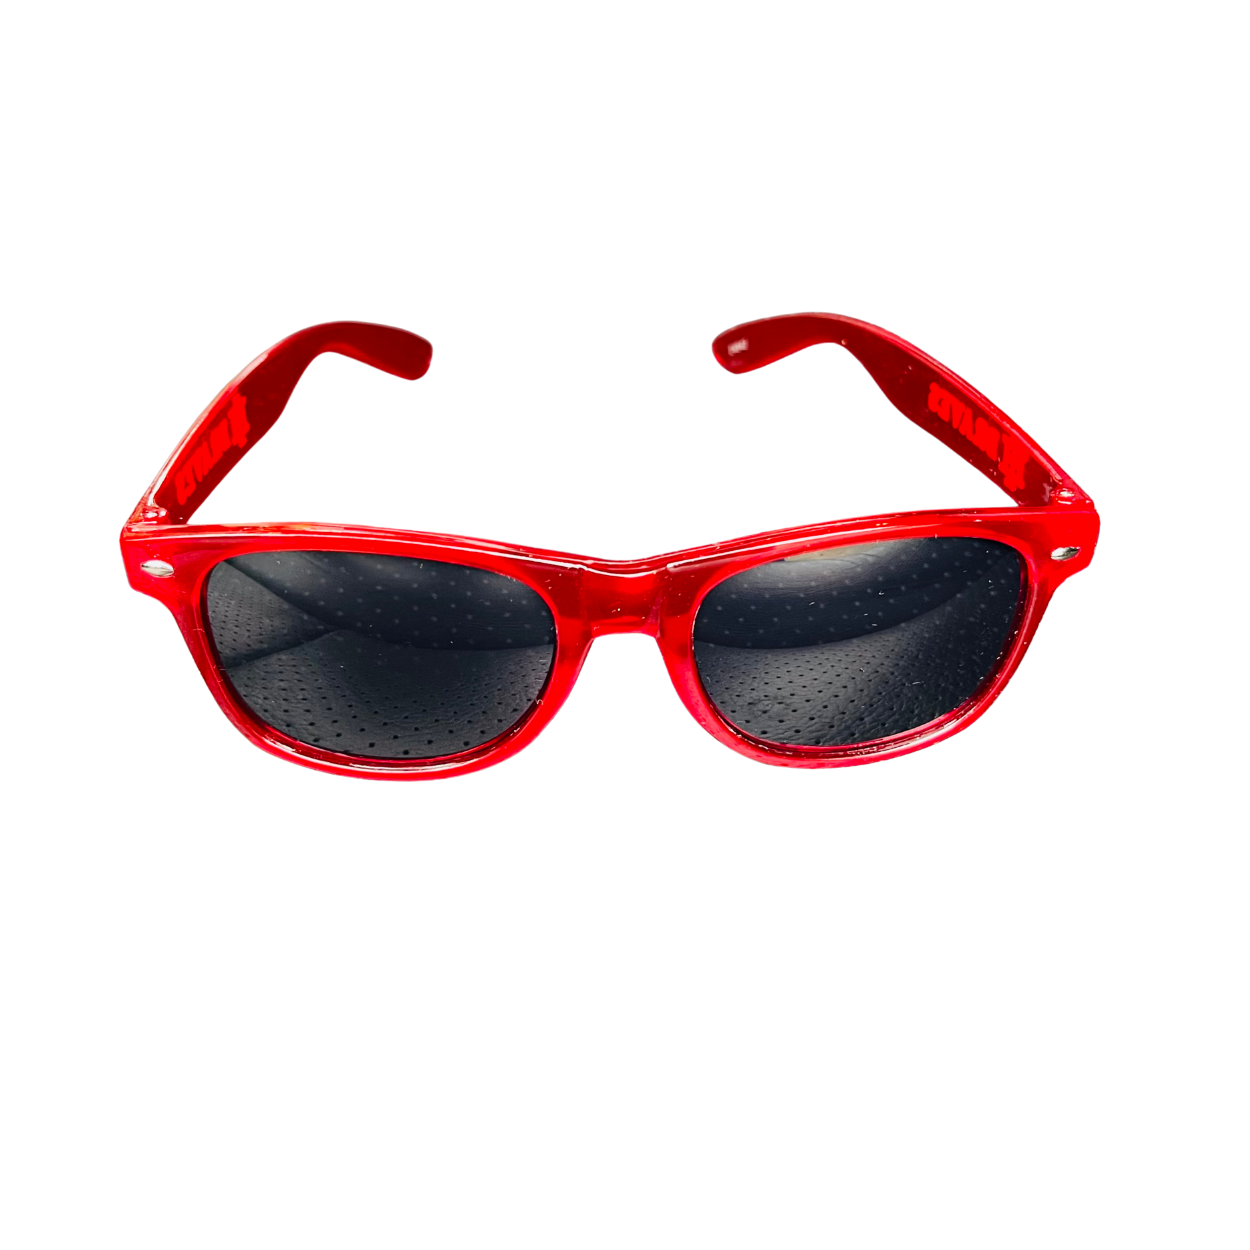 Sunglasses (Translucent)